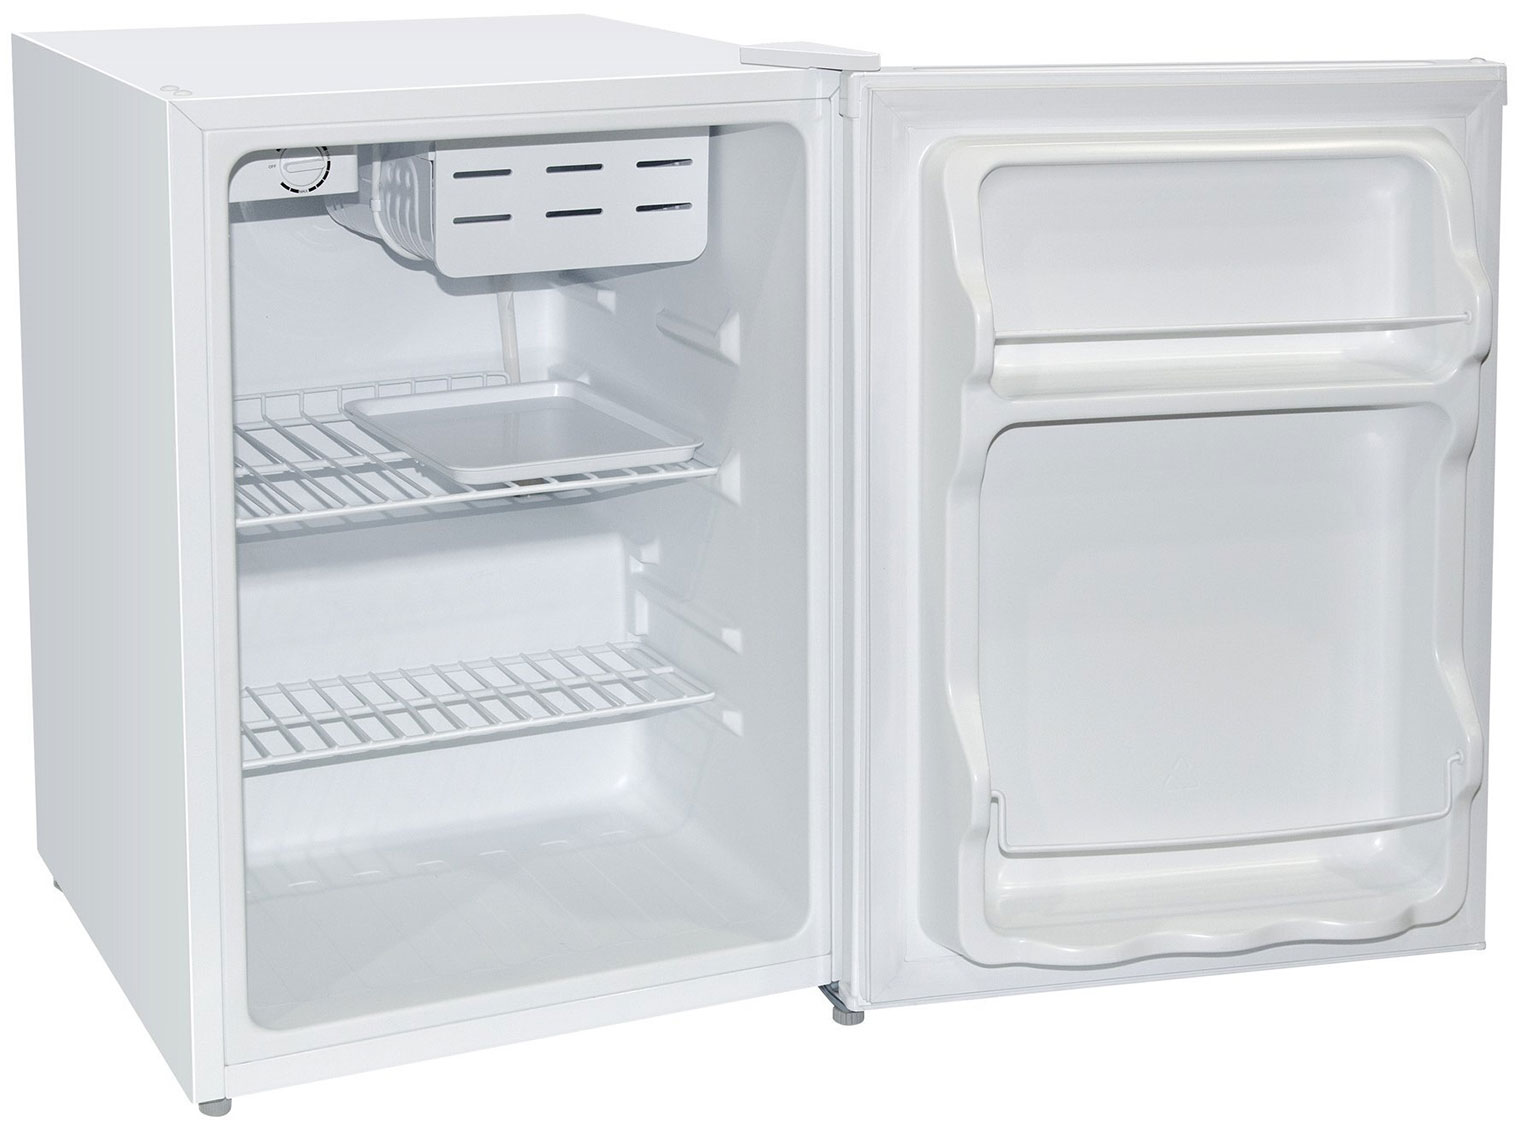 Холодильник Бирюса 70 белый однокамерный холодильник бирюса б 70 белый